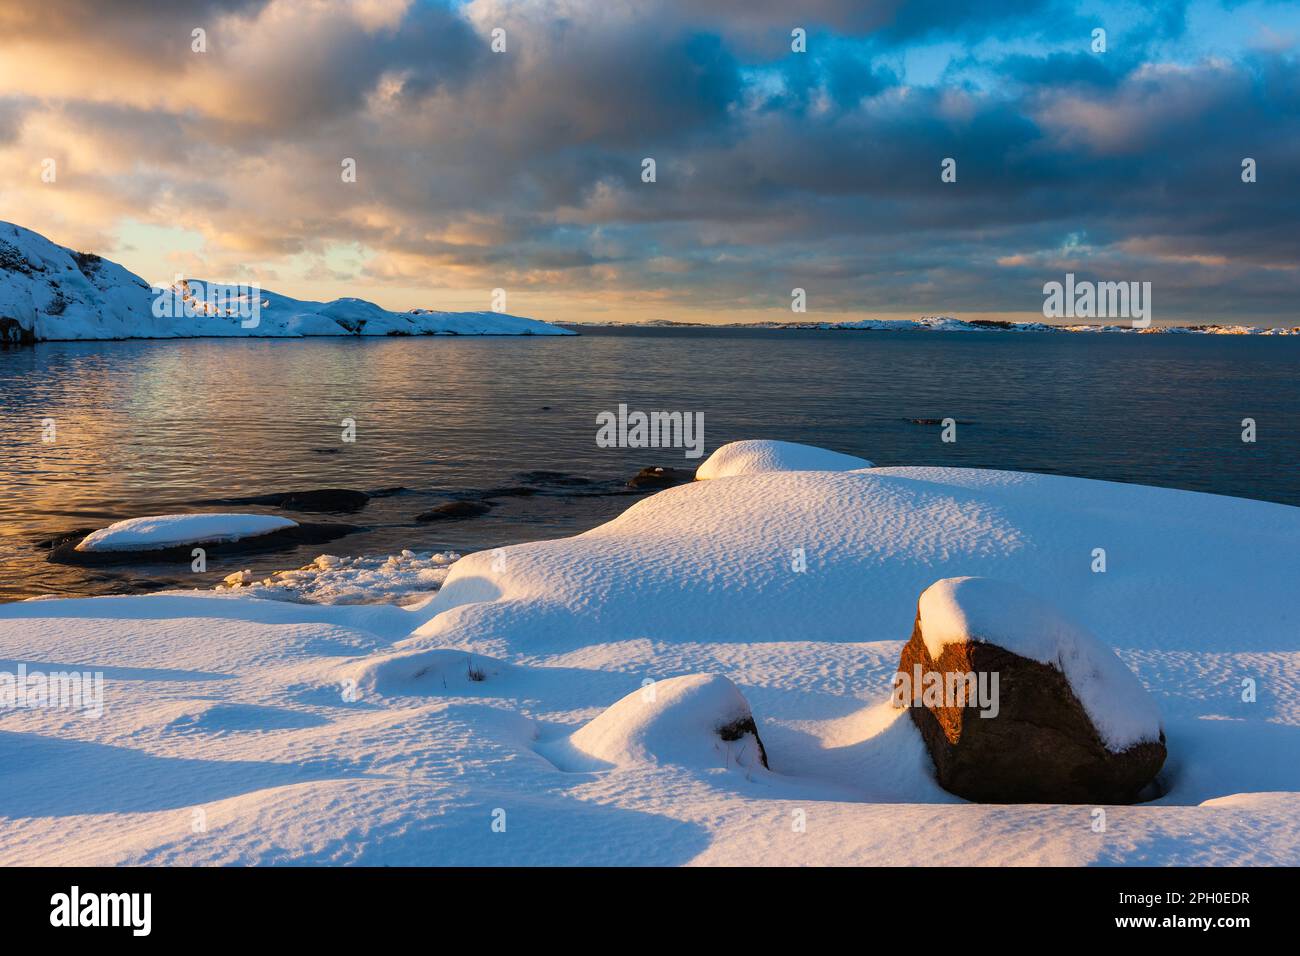 Una pittoresca scena invernale della costa svedese, che riflette un bellissimo tramonto nelle sue acque ghiacciate. La terra coperta di neve e il mare si fondono insieme Foto Stock